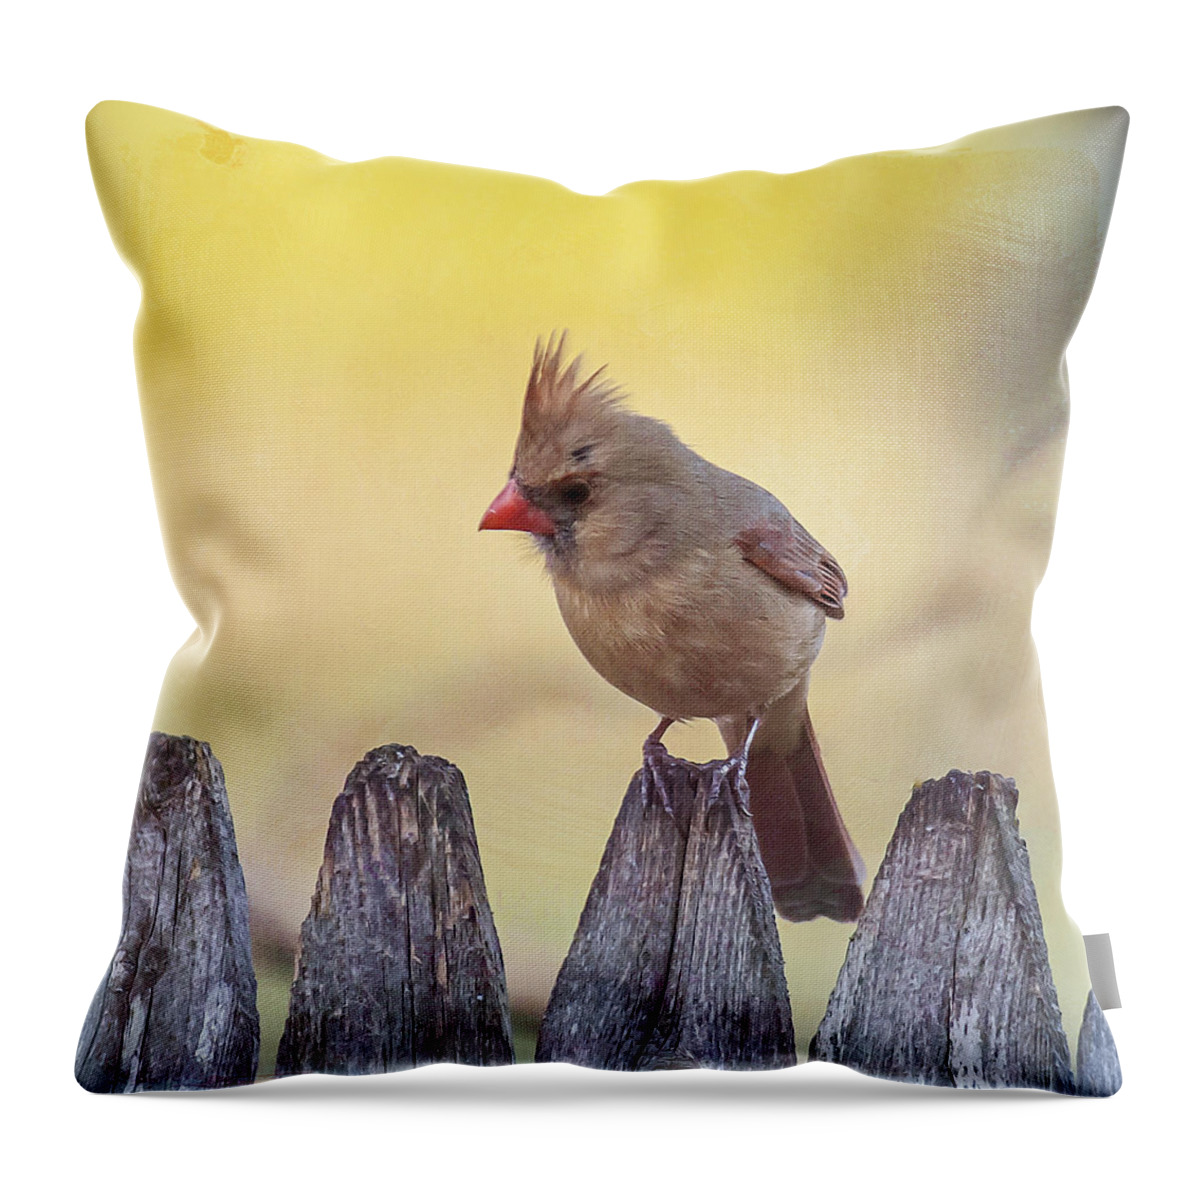 Bird Throw Pillow featuring the photograph Lady Cardinal by Cathy Kovarik